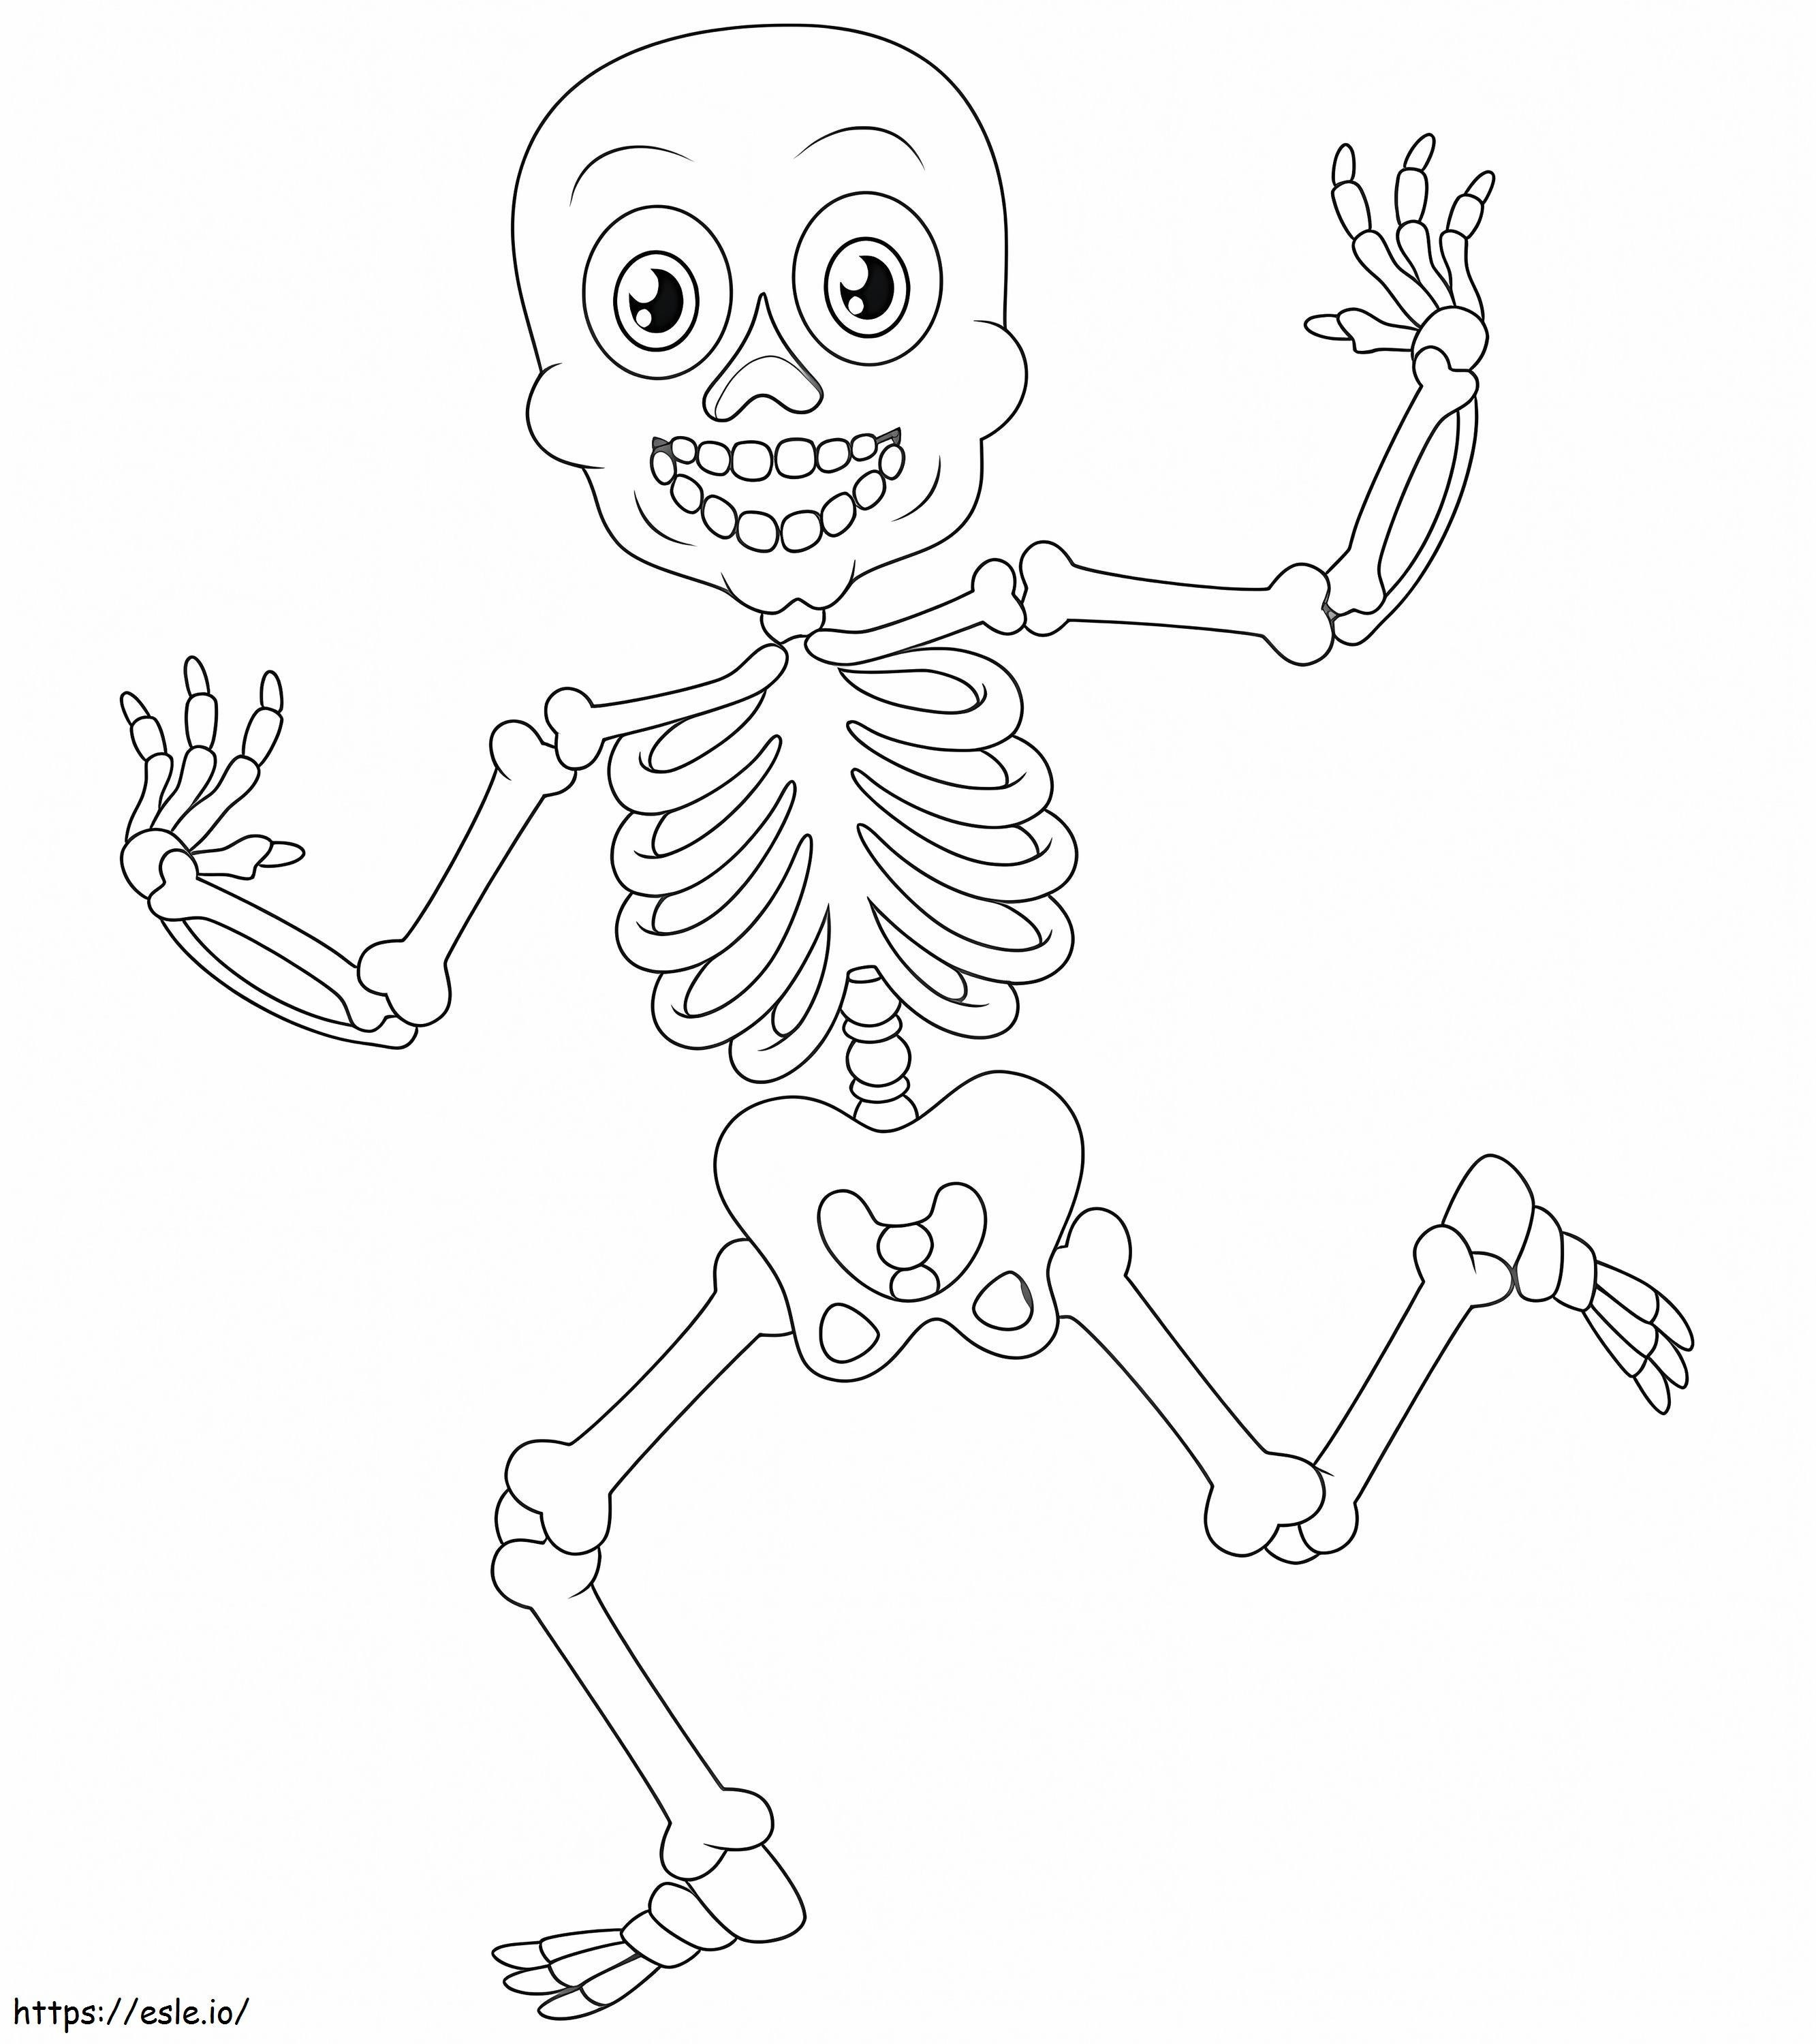 Lustiges Skelett ausmalbilder